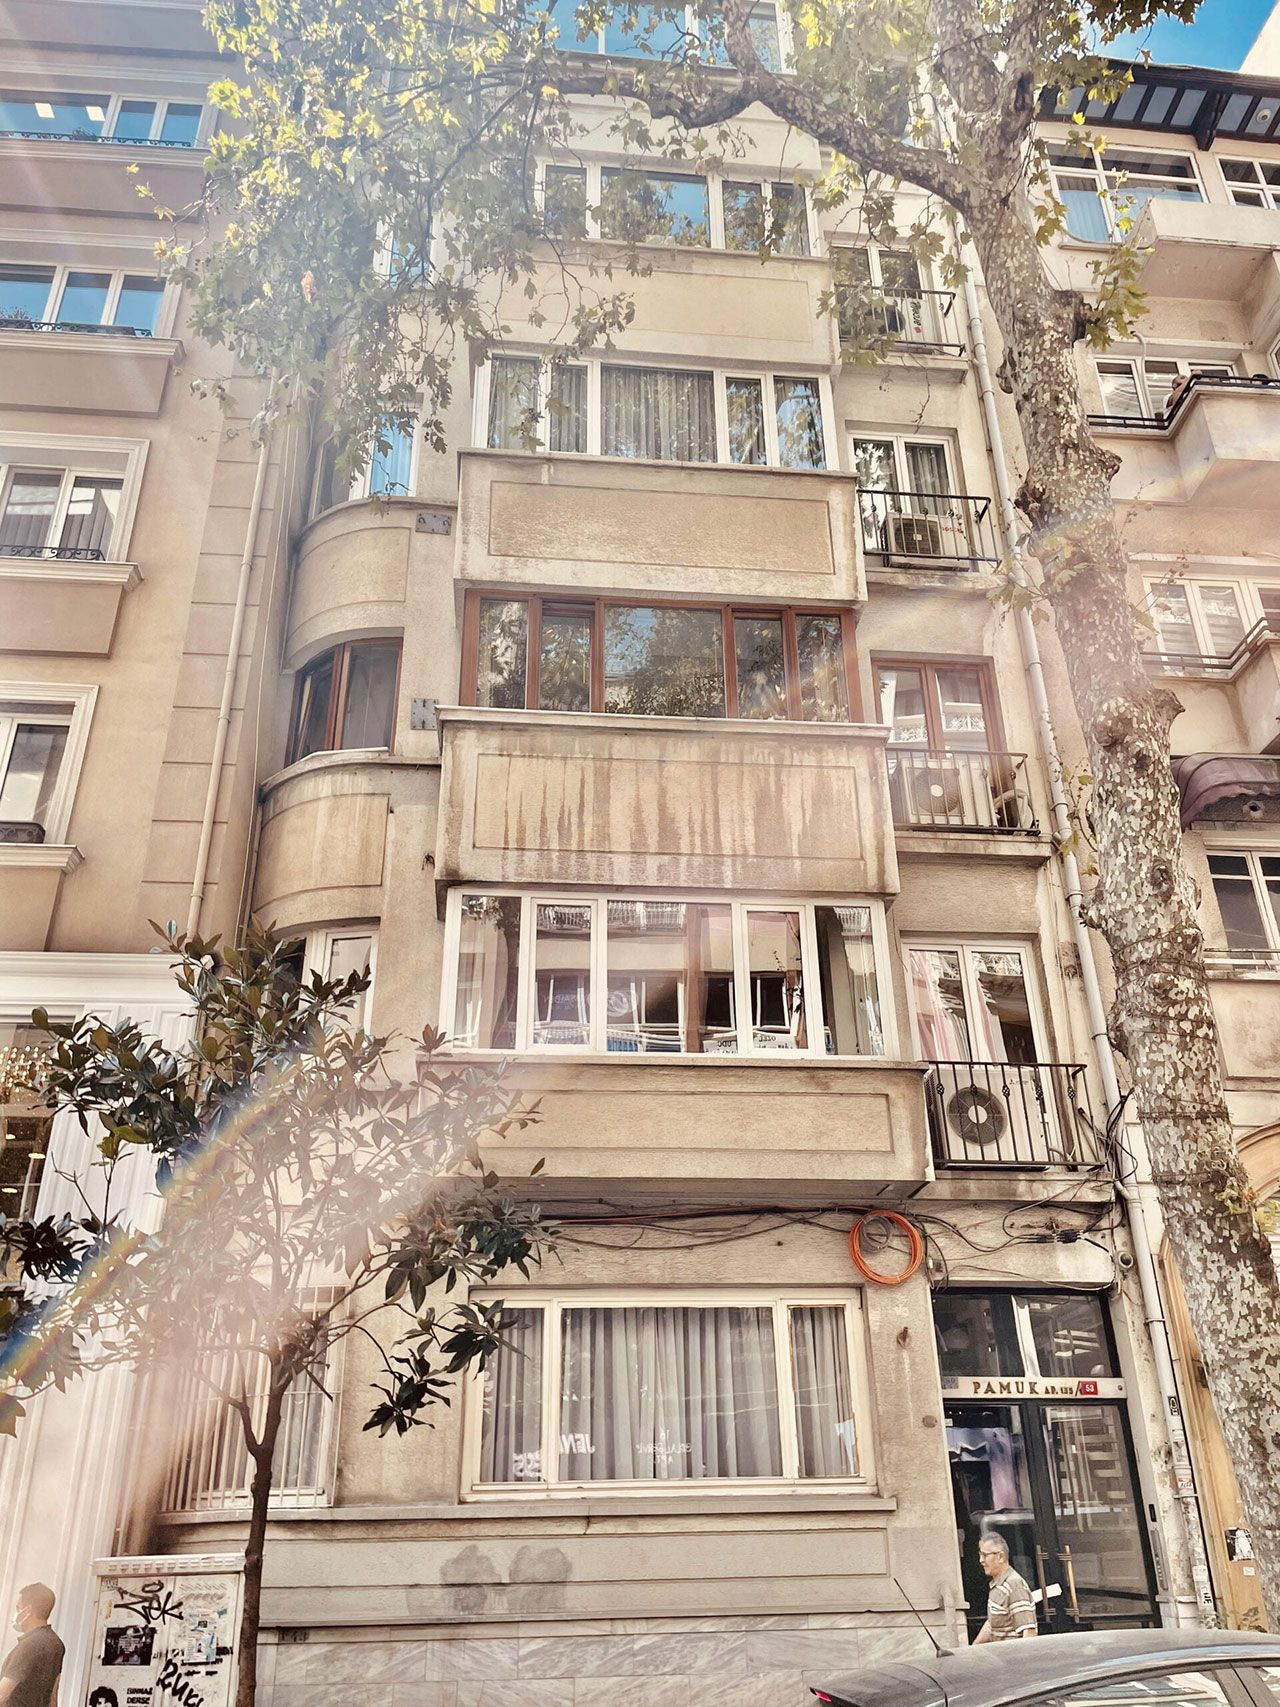 İçerisinde Orhan Pamuk'un 20 bin kitabı bulunan Pamuk apartmanı yıkılıyor!